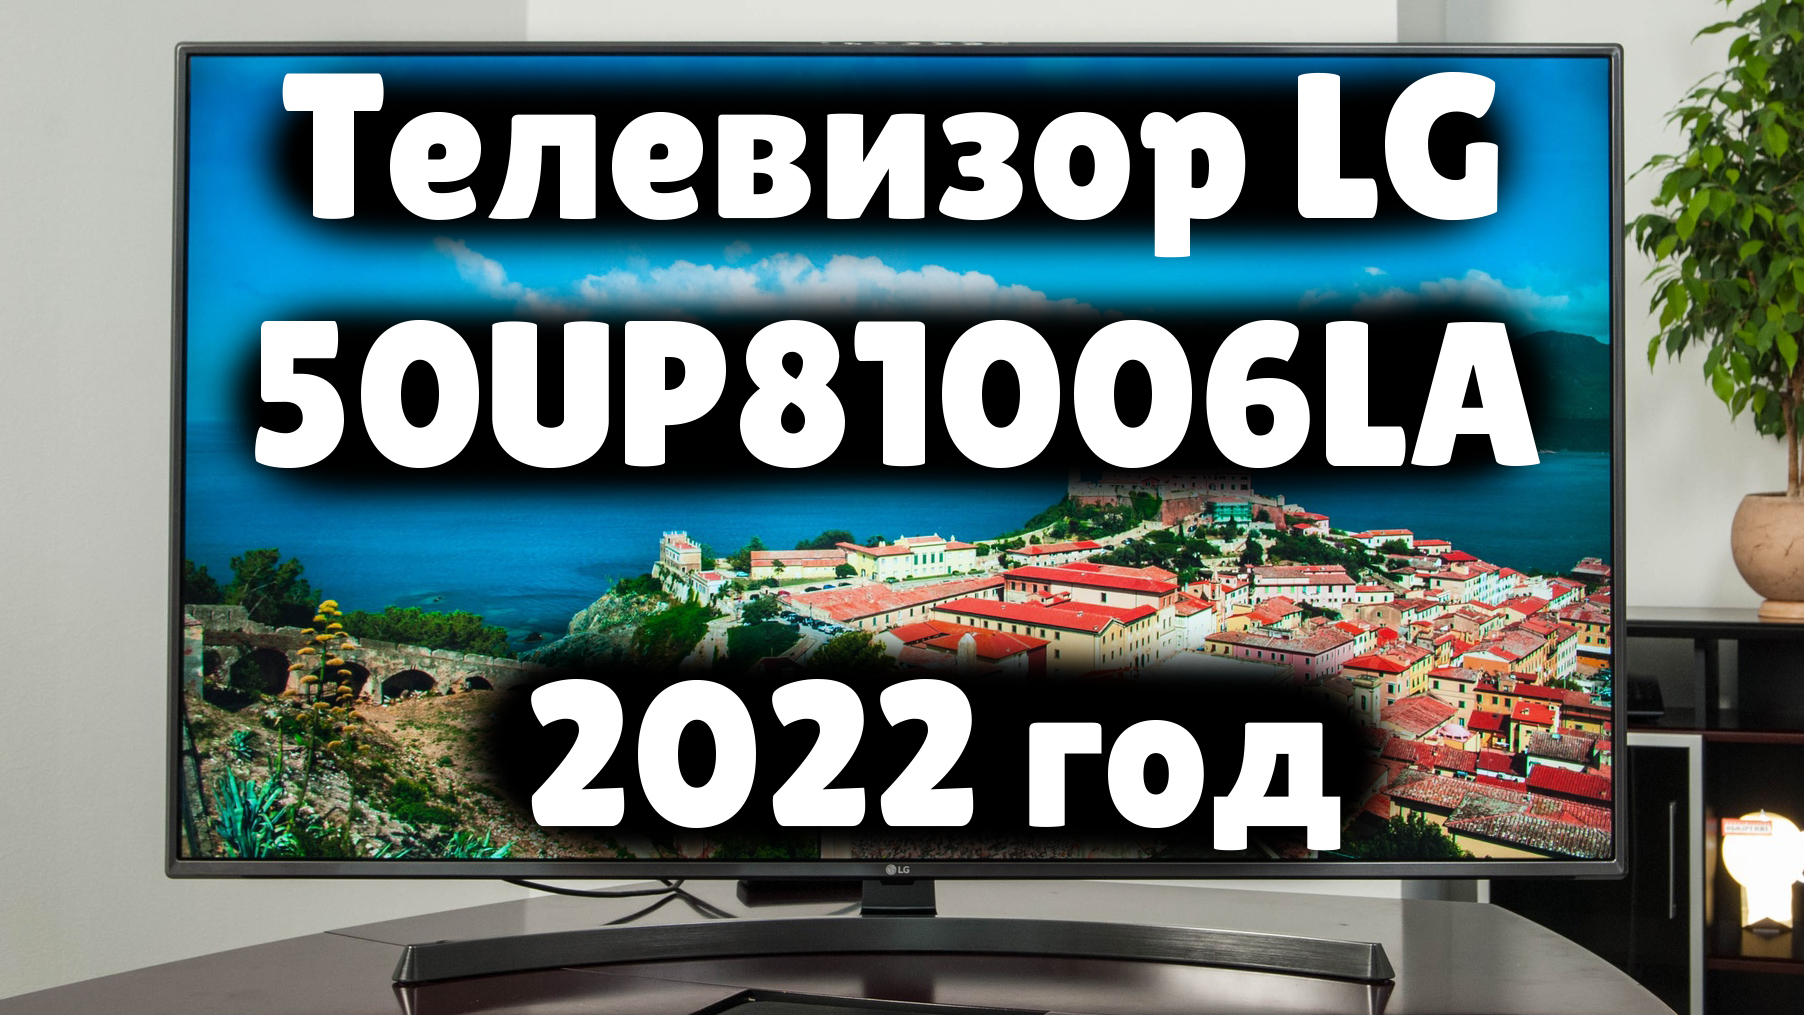 Рутуб на телевизор lg. LG up 6581006.